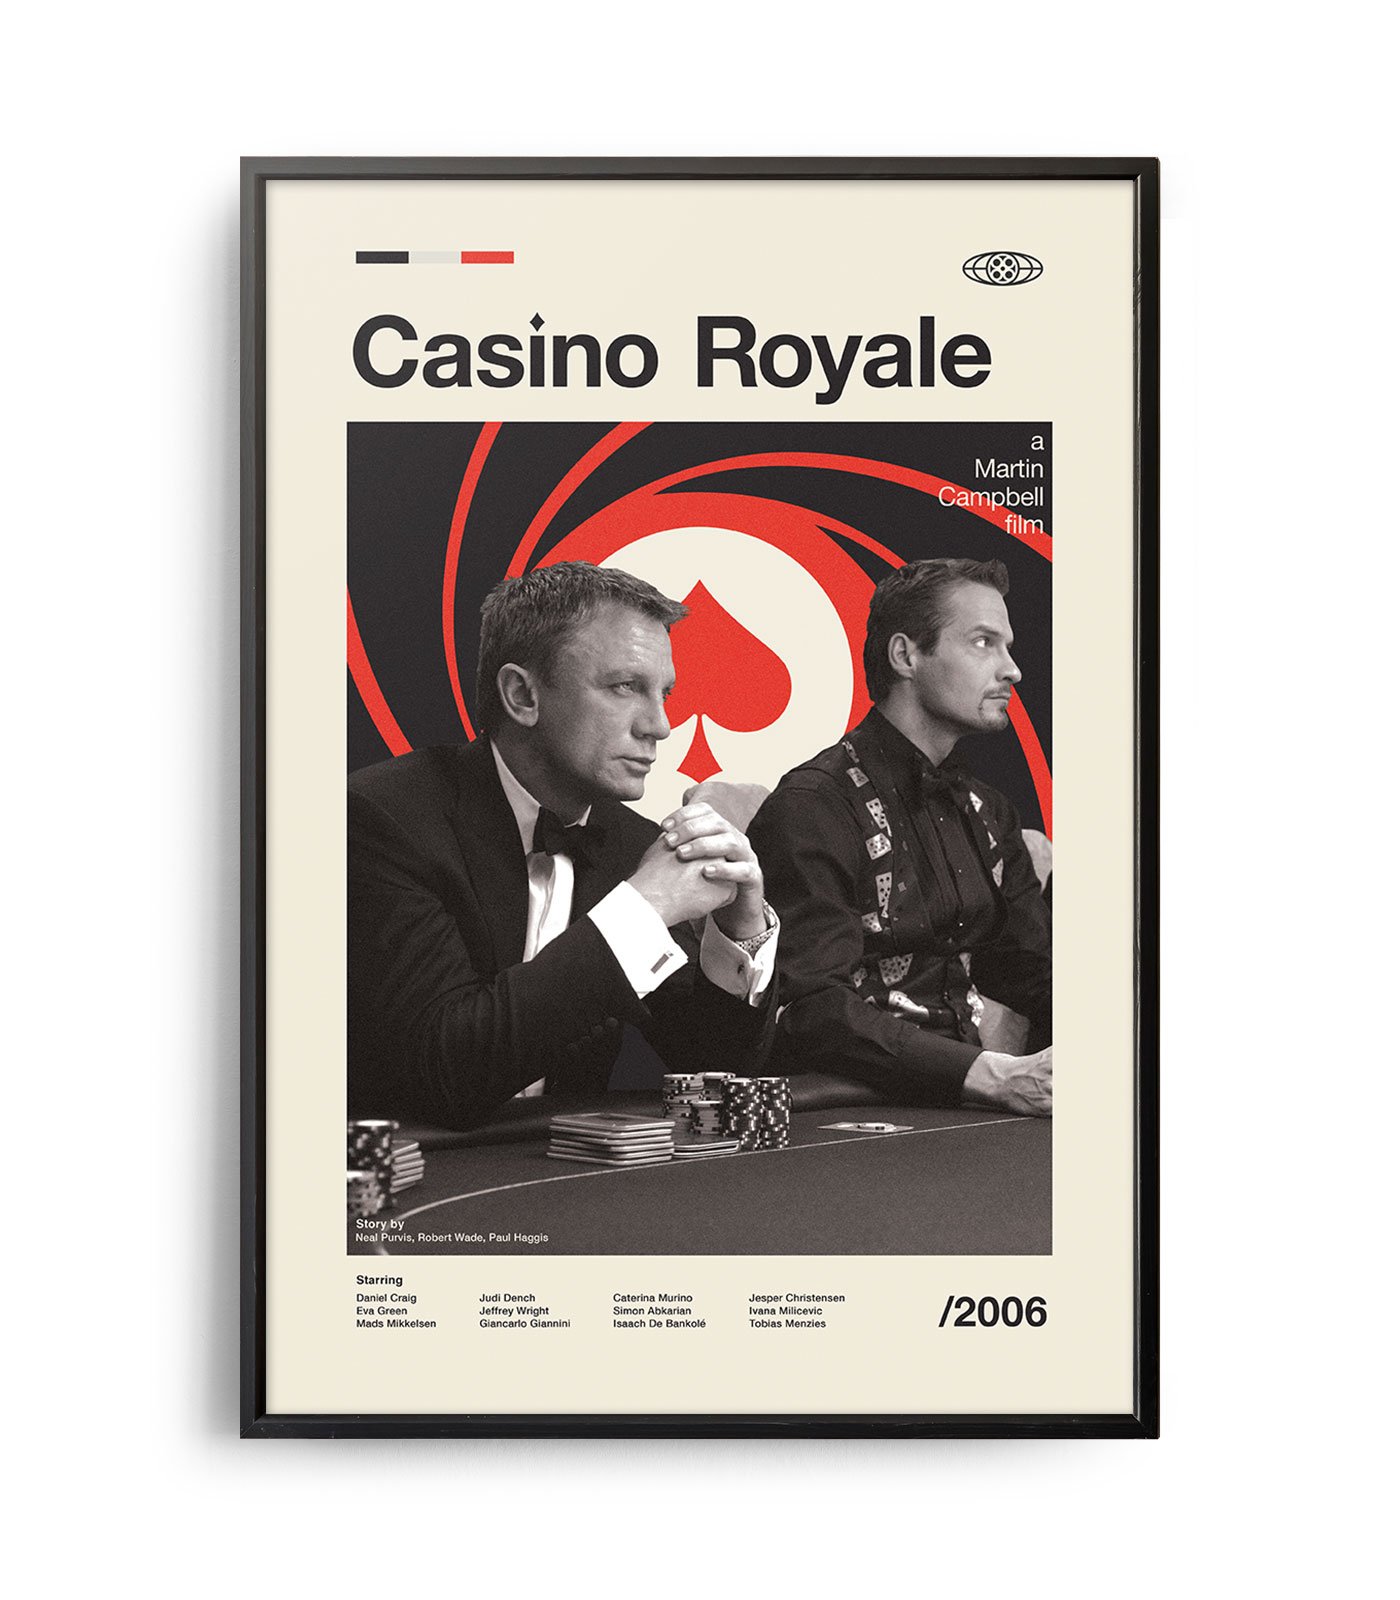 casino royale movie poster rambo movie poster